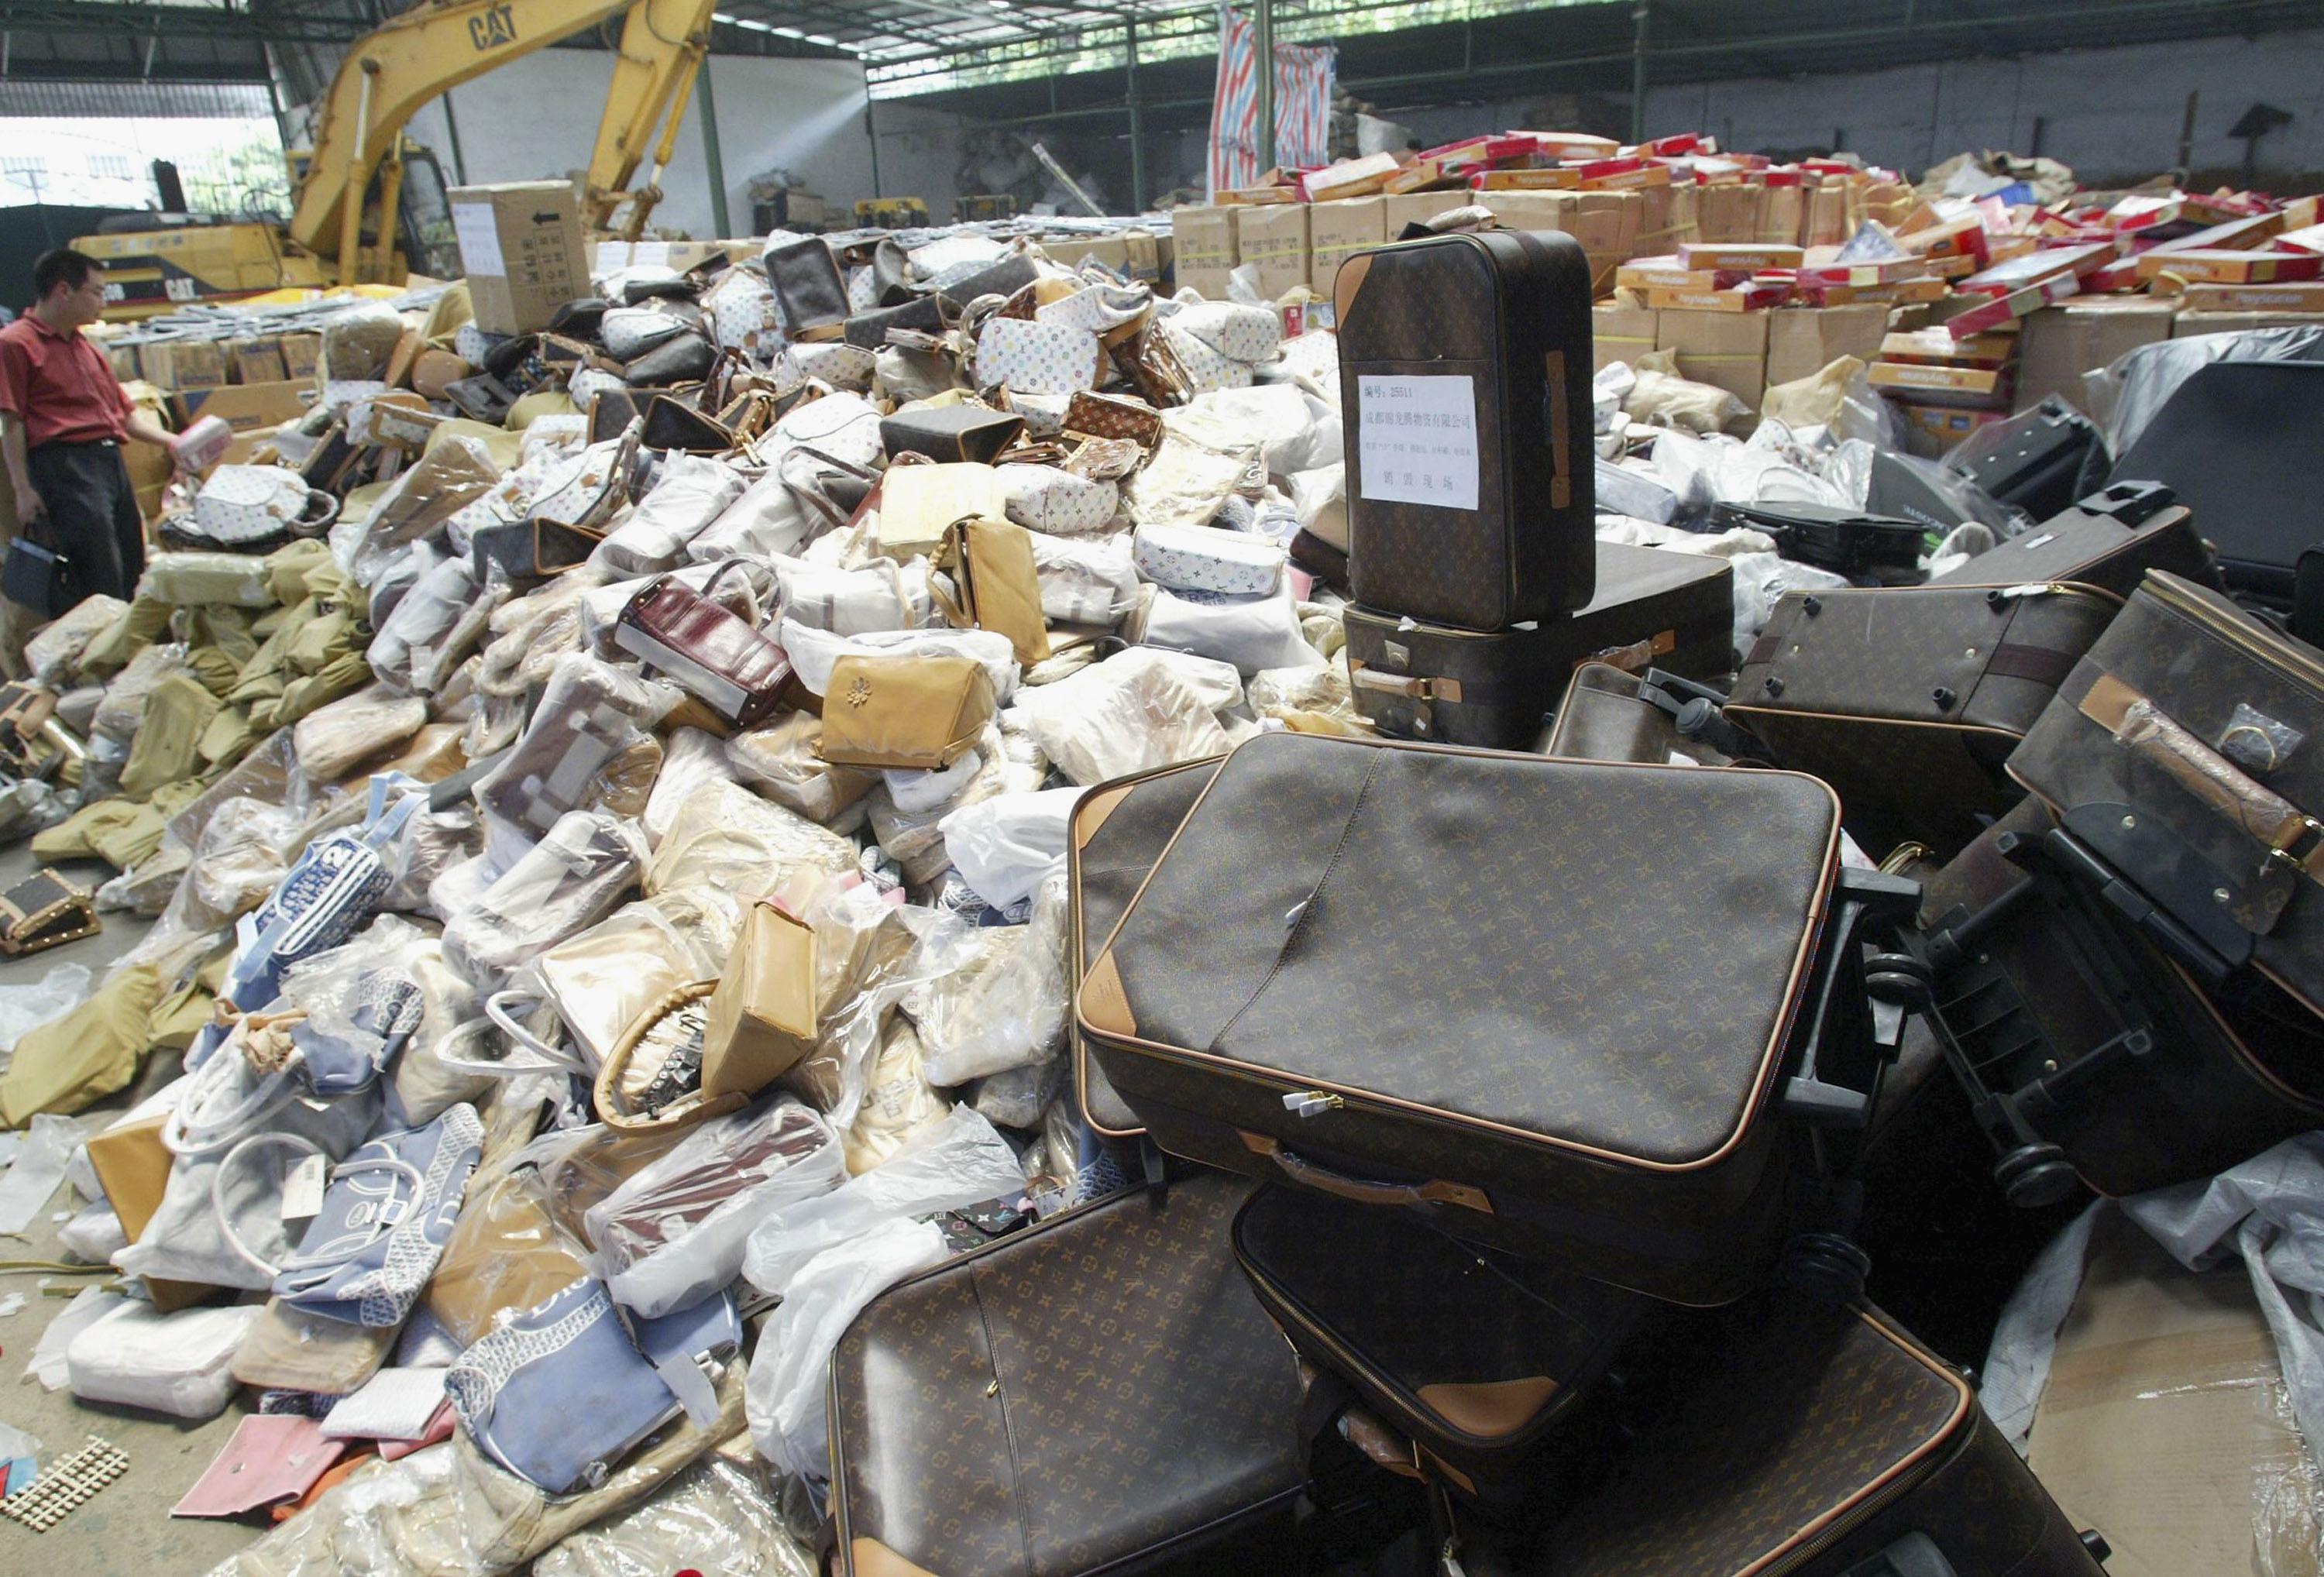 Mängder av piratkopierade produkter stoppas och förstörs, bara i Europa beslagtogs det saker till ett värde av 617 miljoner euro. (Foto: China Photos/Getty Images)